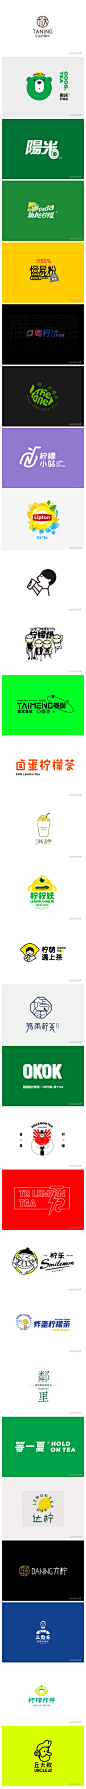 柠檬茶饮品品牌LOGO设计欣赏！ _logo_T2021726 